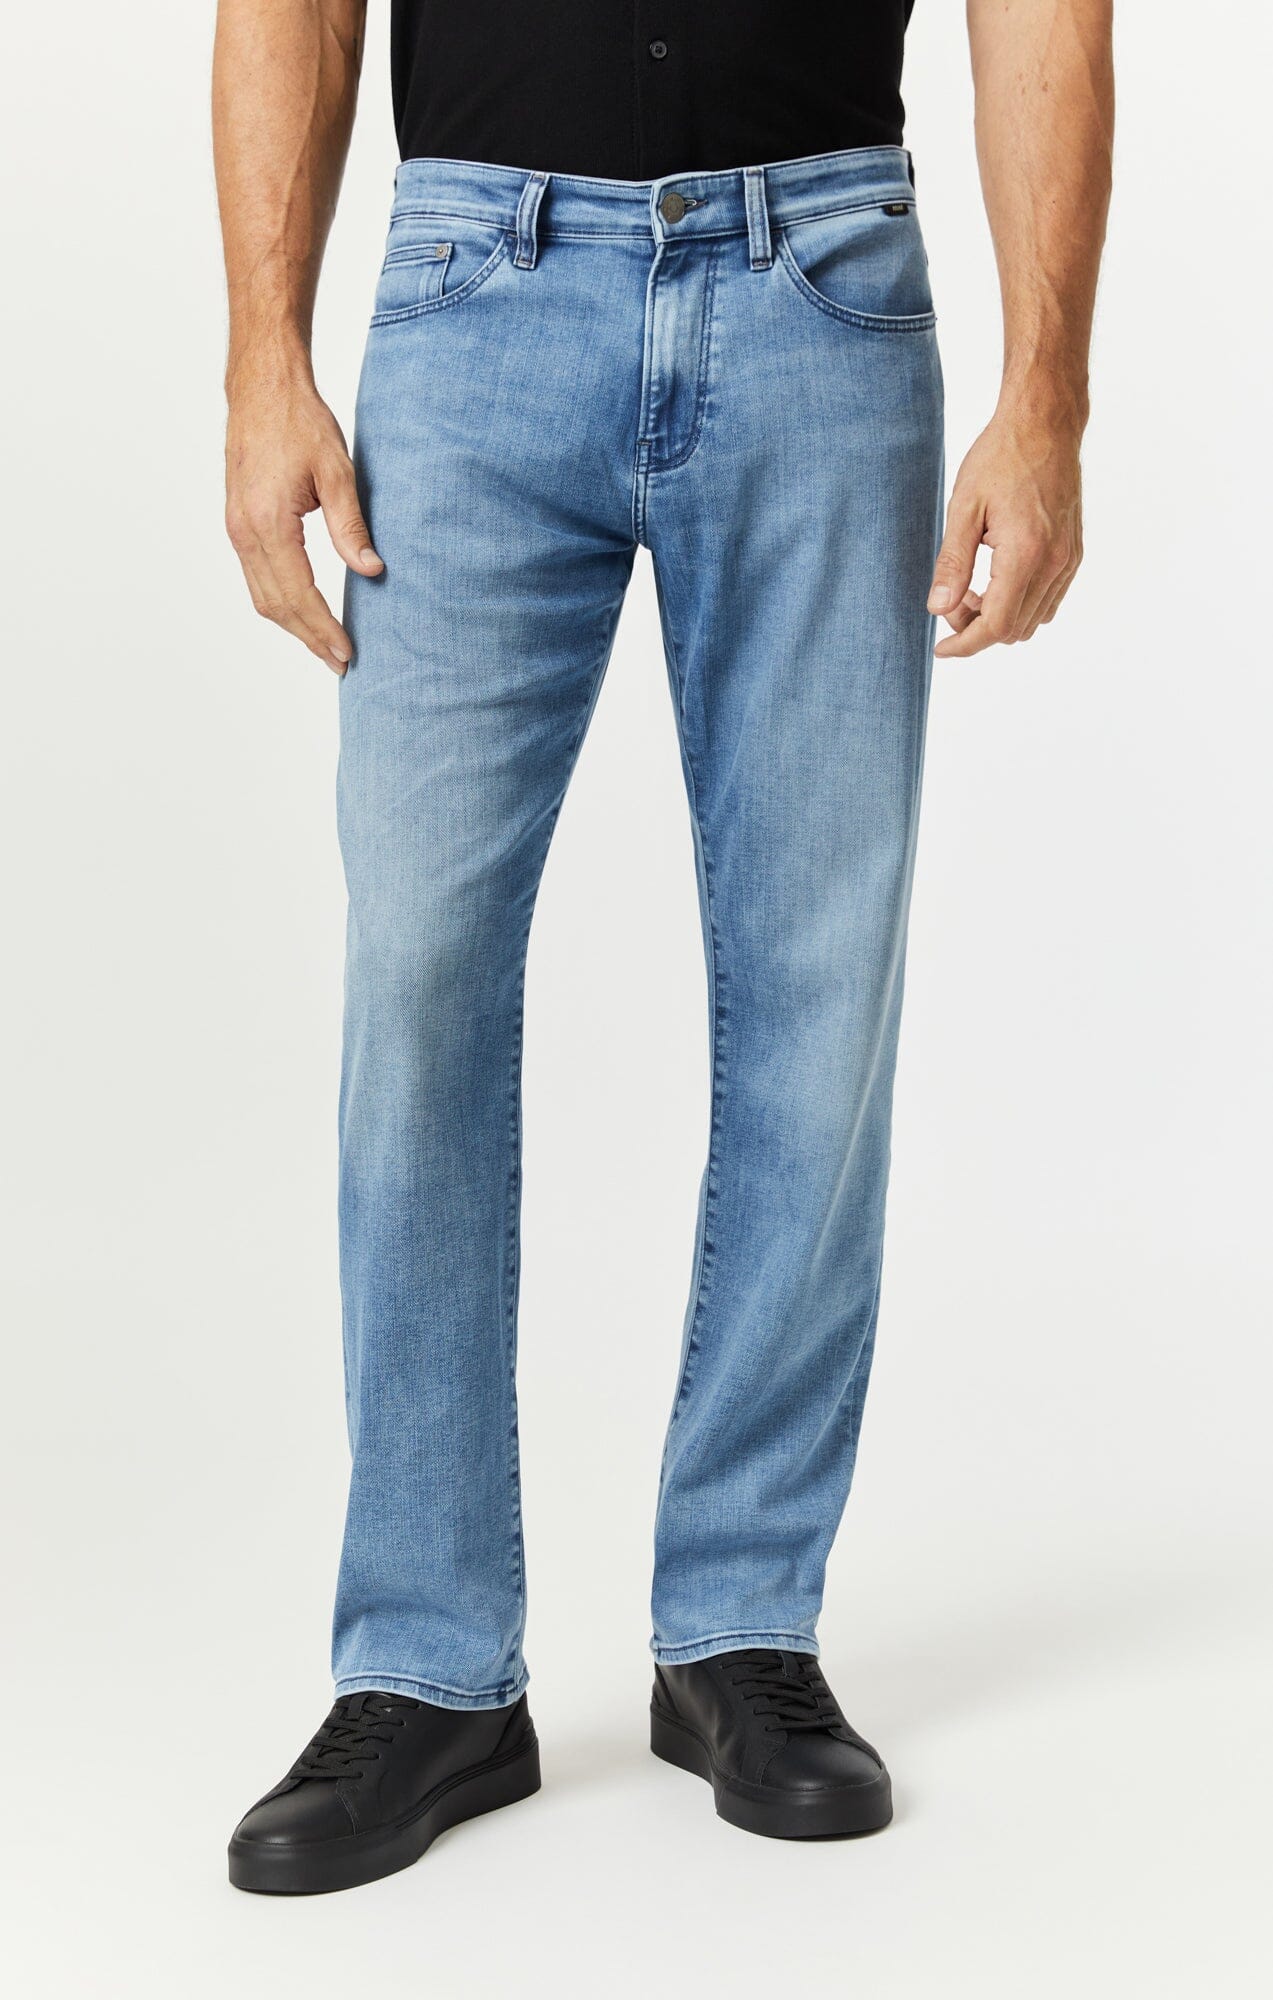 Men\'s Straight Jeans - Men Jeans® Shop | Jeans Mavi for Straight Leg